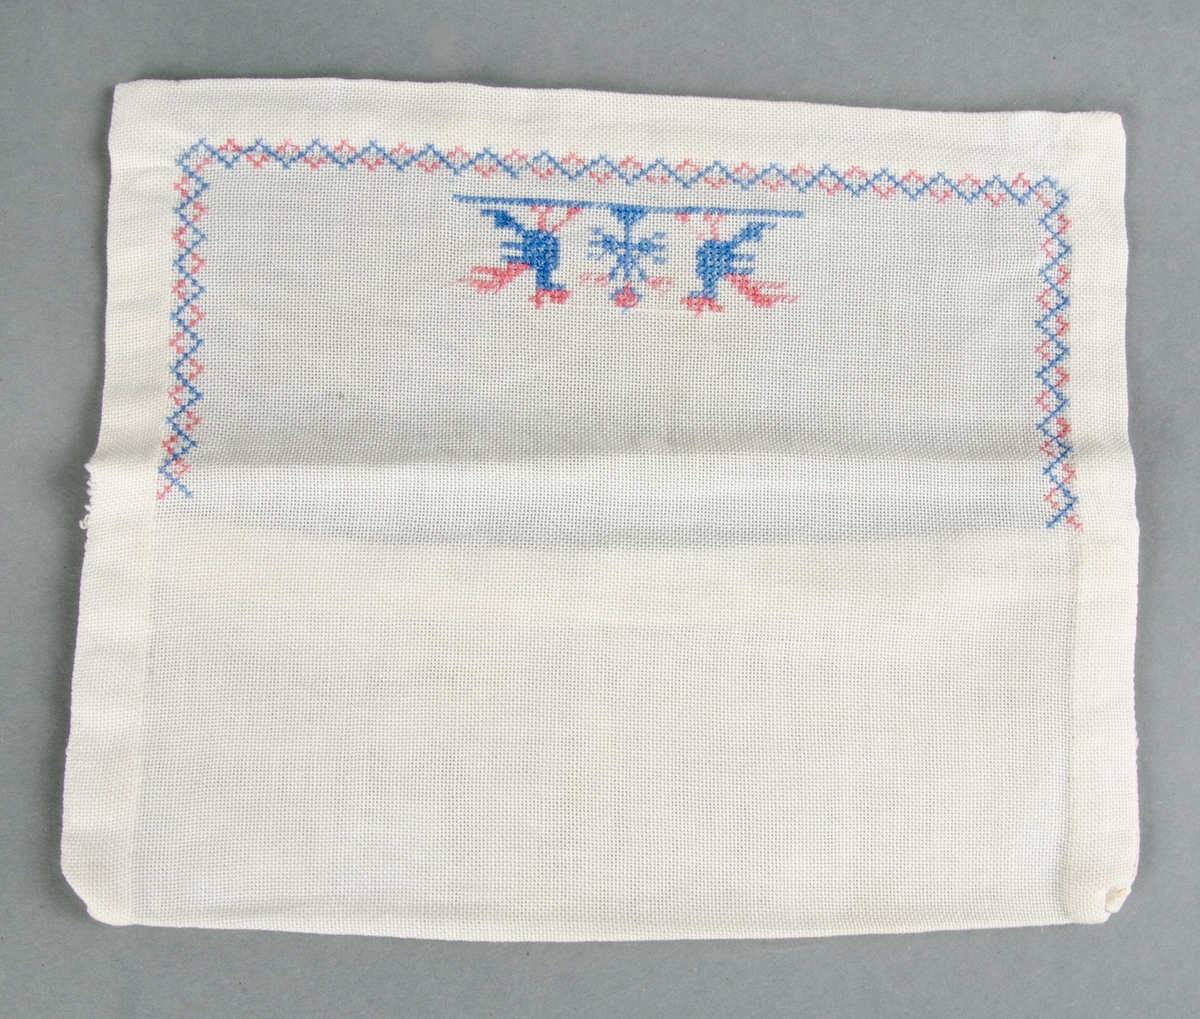 Servettväska av vitt glest tuskaftat bomullstyg handsydd med korsstygnsbroderi i merceriserad bomullstråd, två fåglar och bård i blått och rött.

